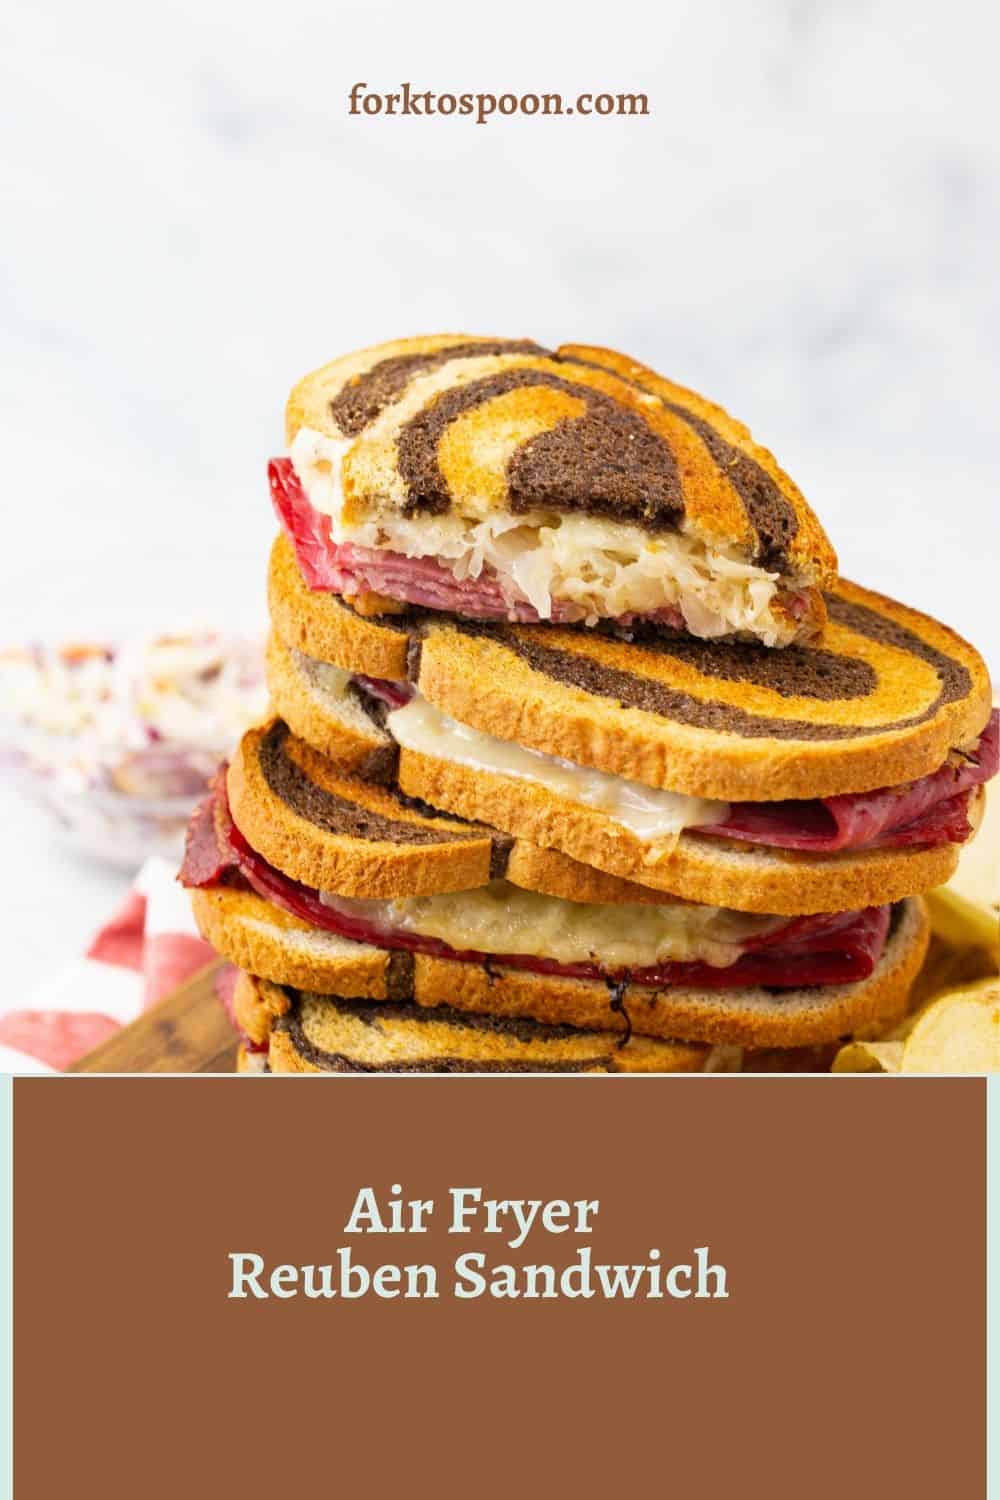 Air Fryer Reuben Sandwich